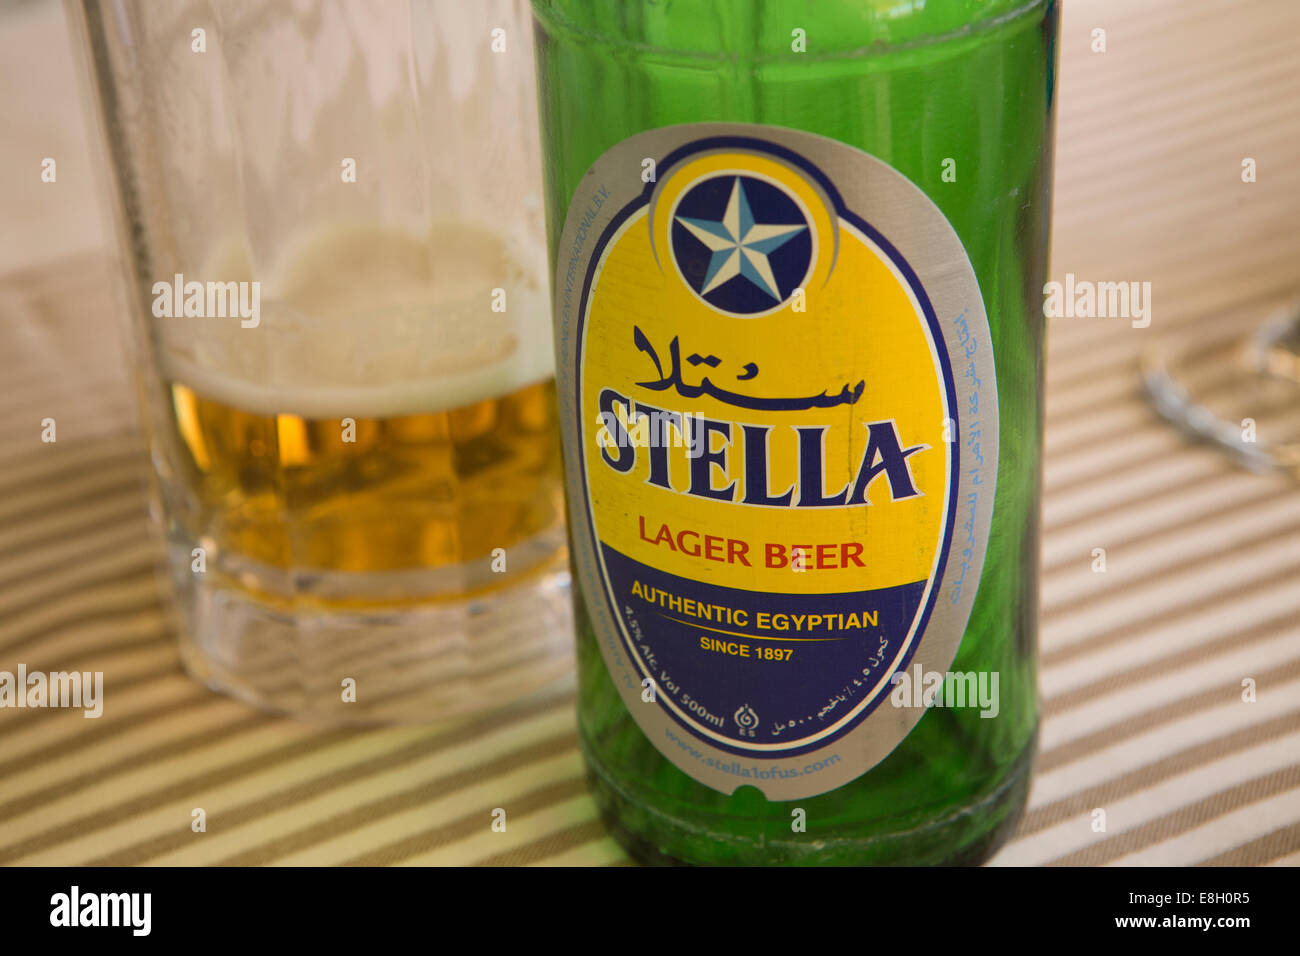 Egypt, Luxor, bottle of Stella Egyptian Lager Beer Stock Photo